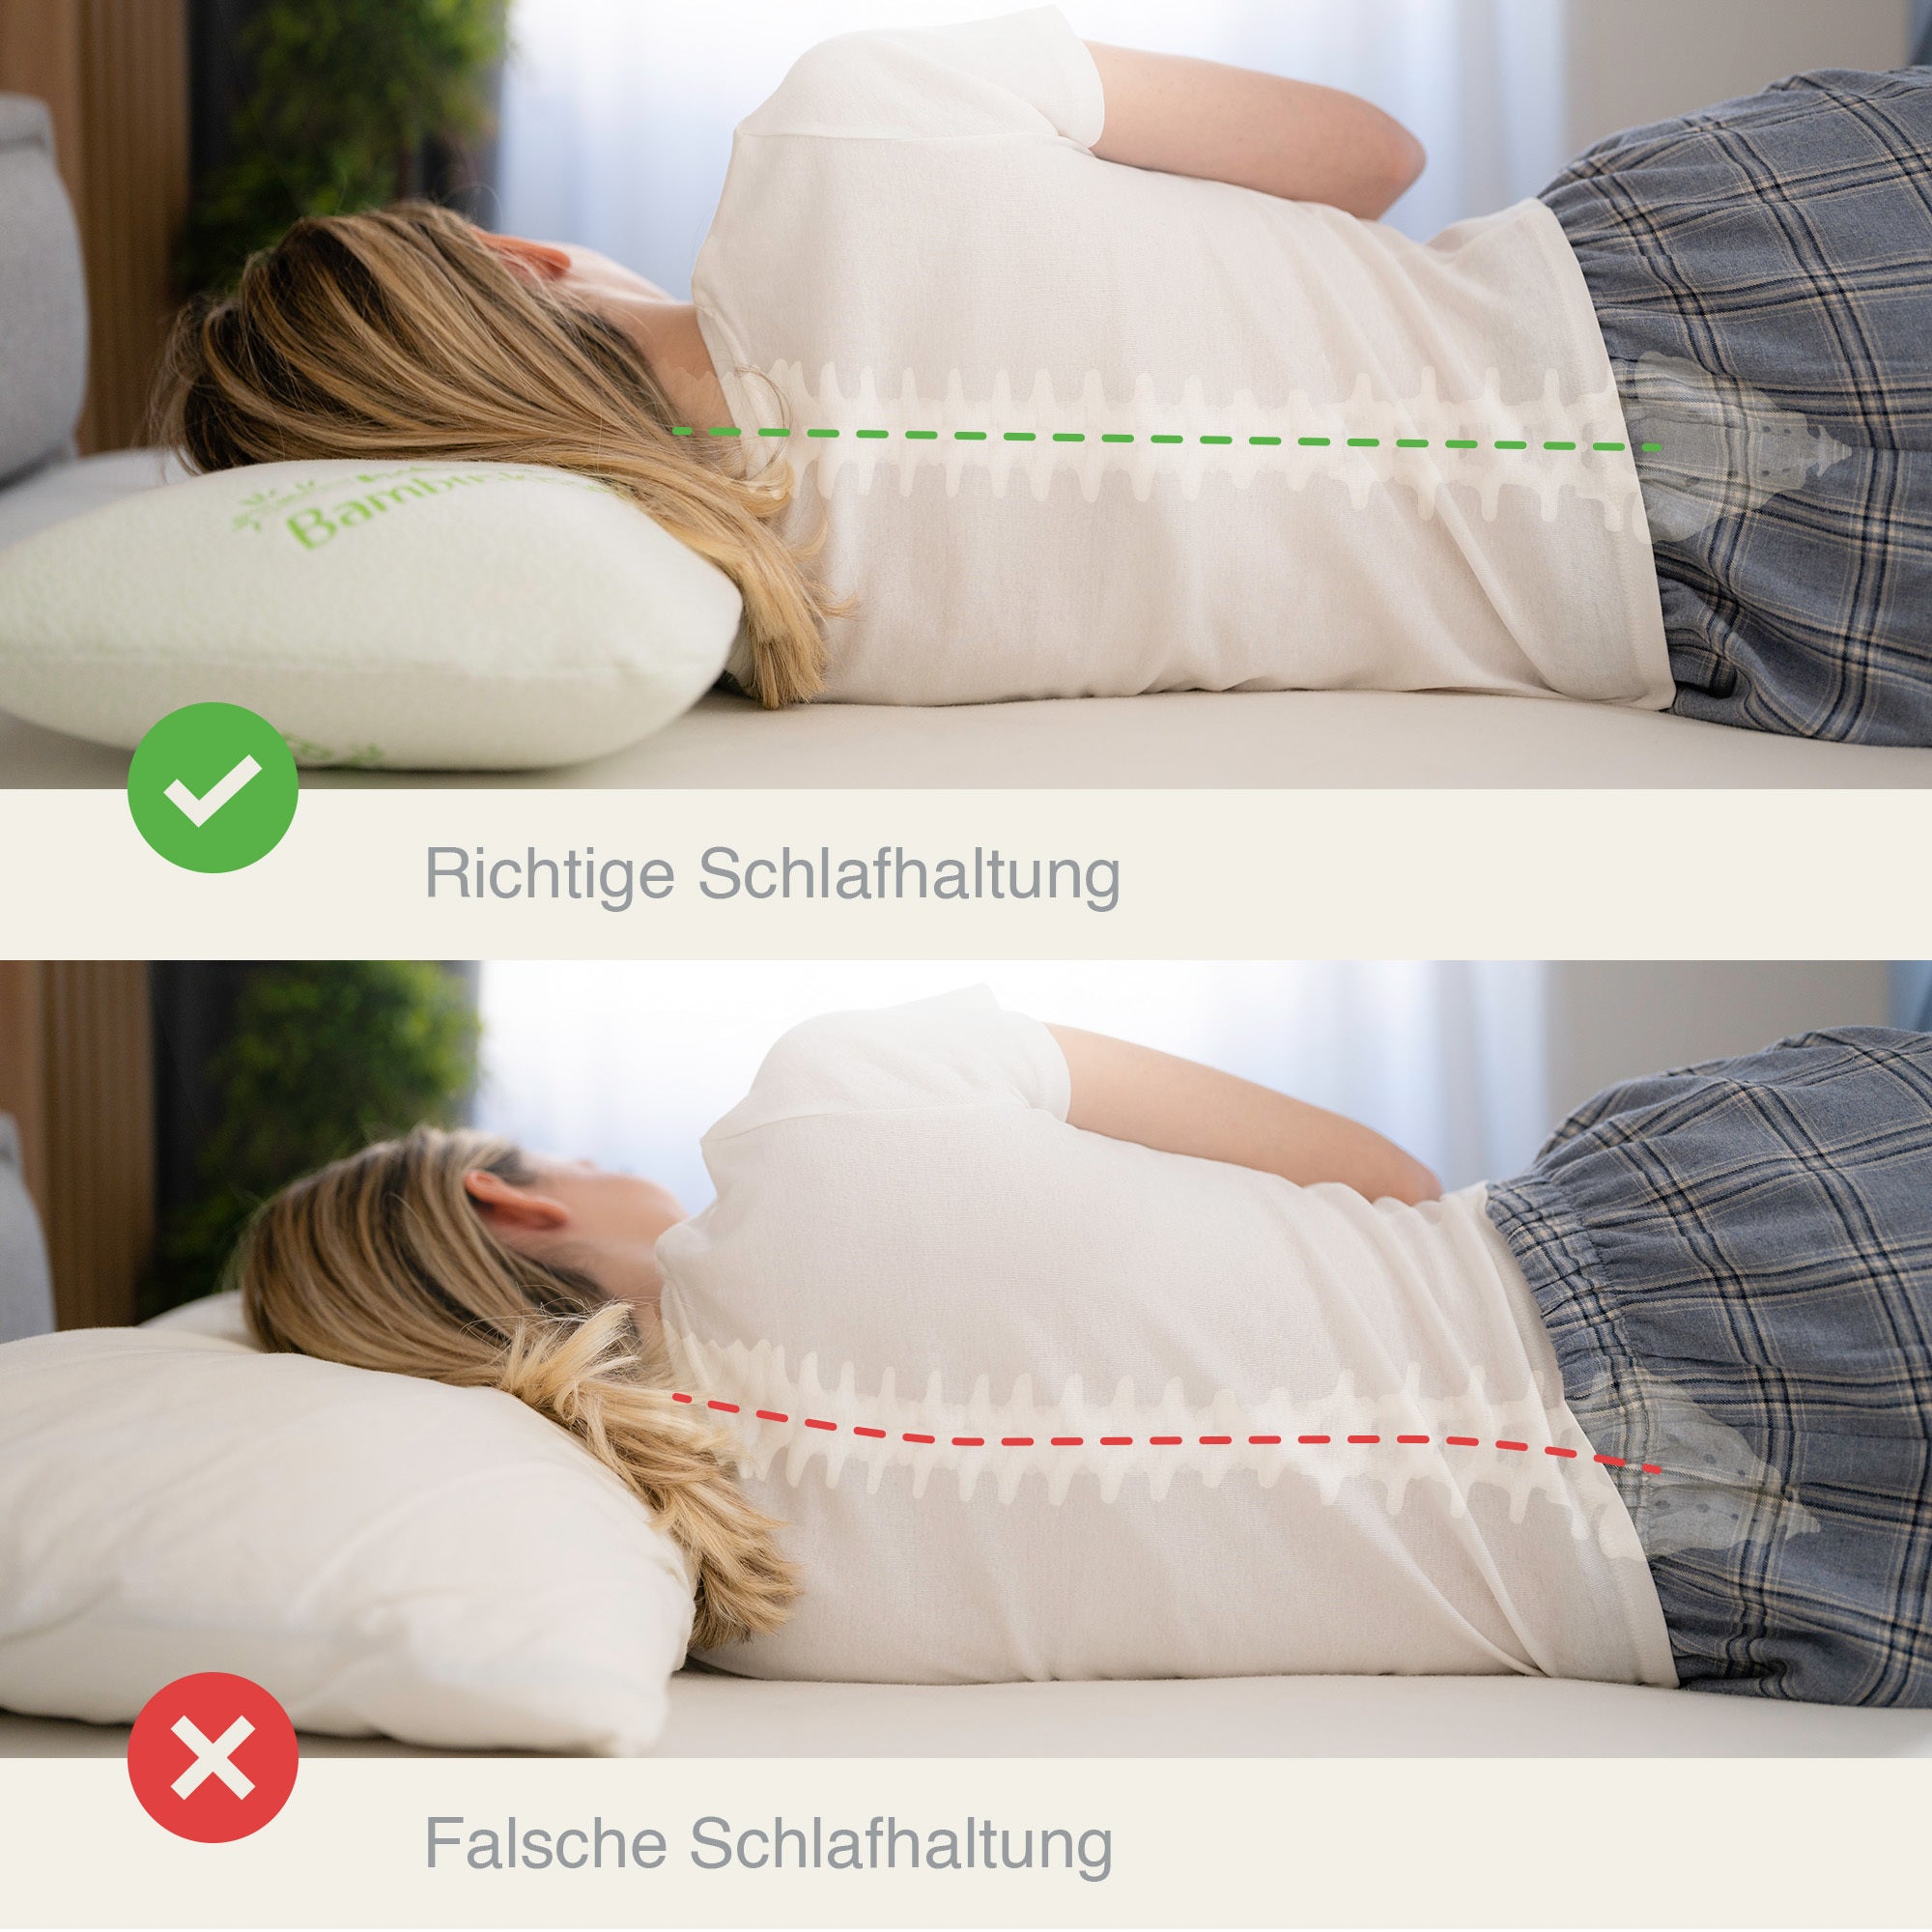 Garder la position de sommeil correcte et aligner la colonne vertébrale.